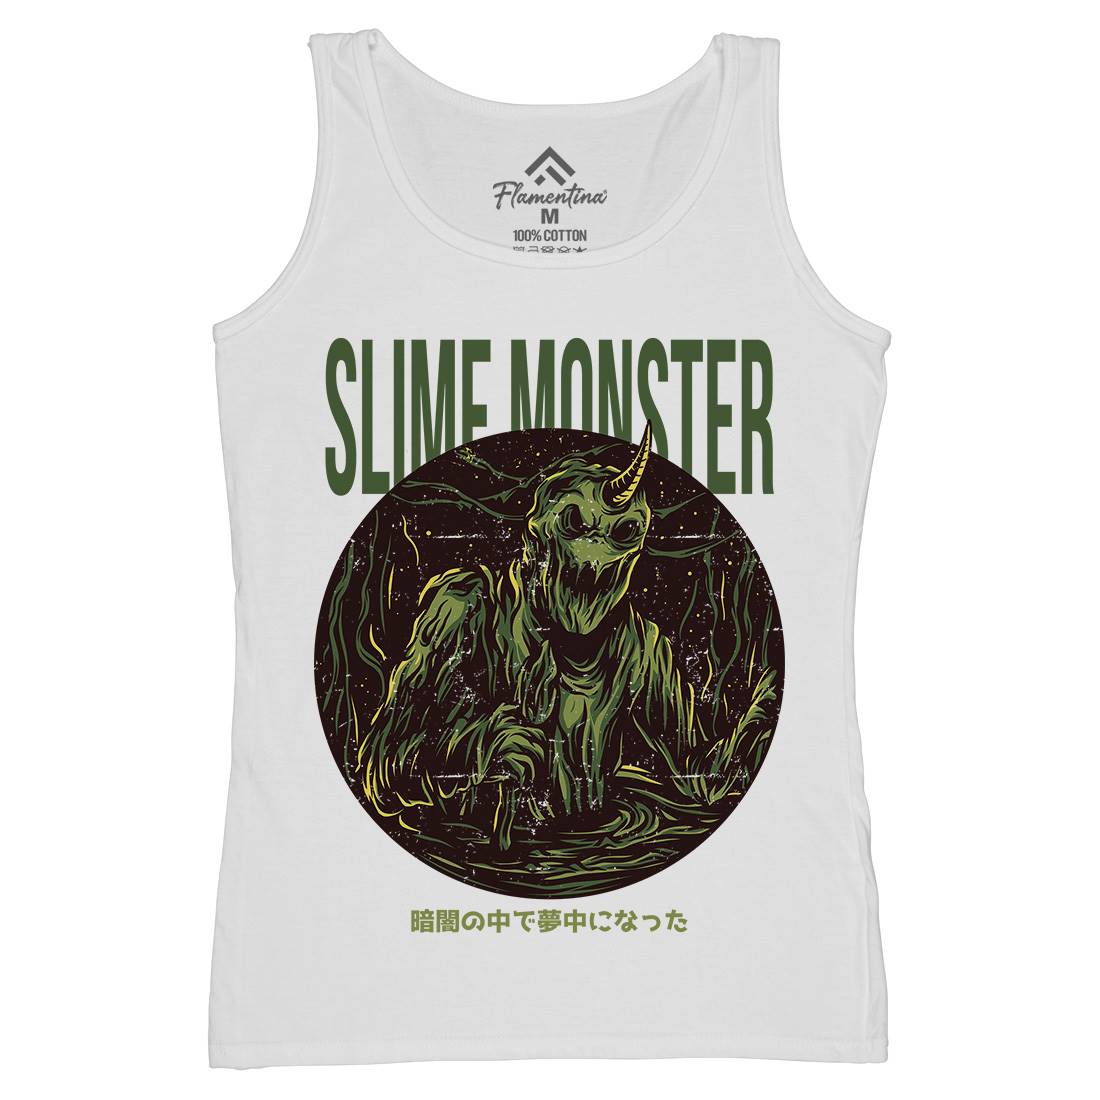 Slime Monster Womens Organic Tank Top Vest Horror D822